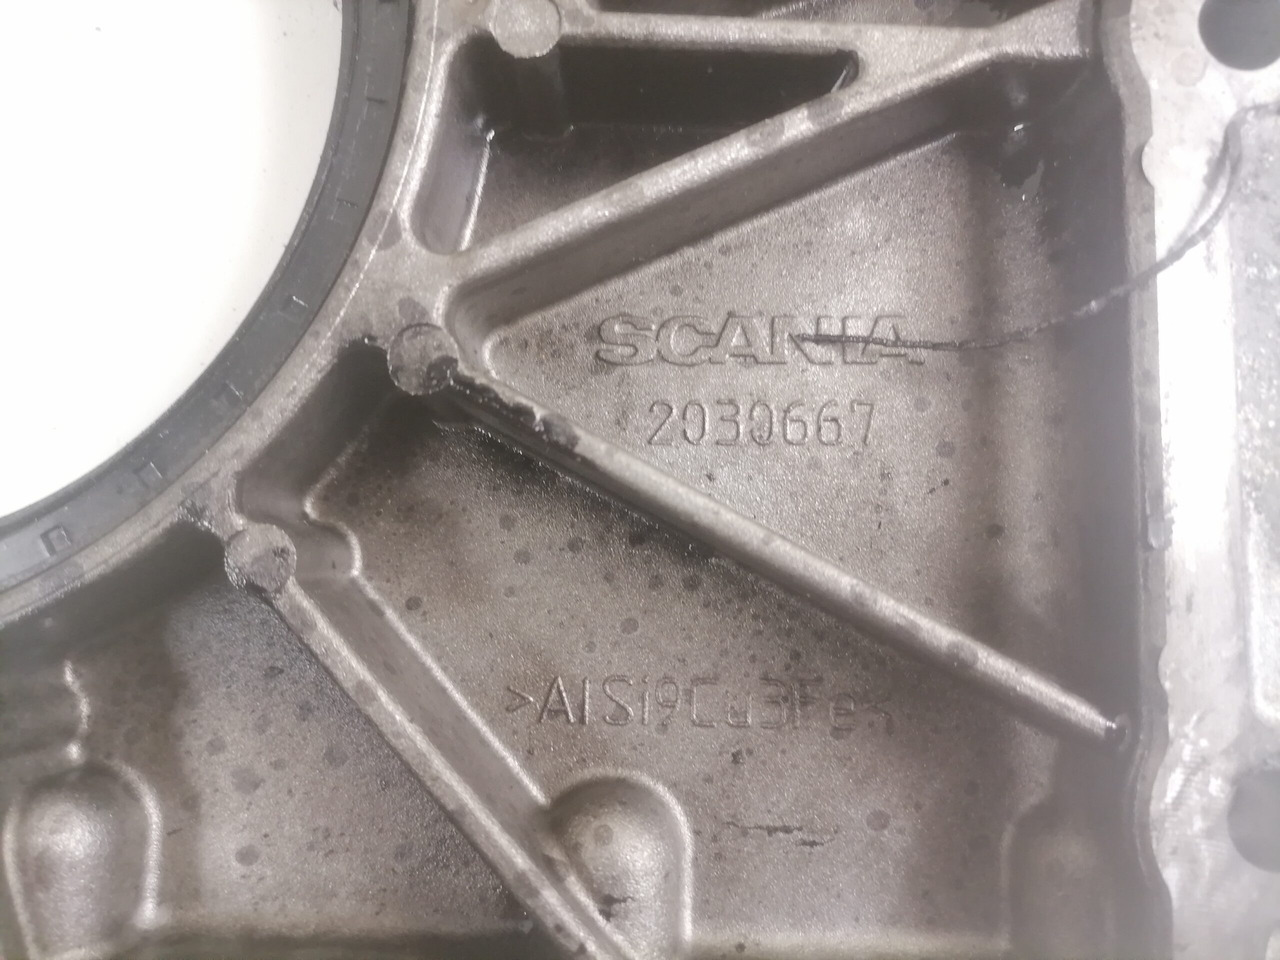 Mootor ja varuosad - Veoauto Scania Engine front cover 2030667: pilt 3